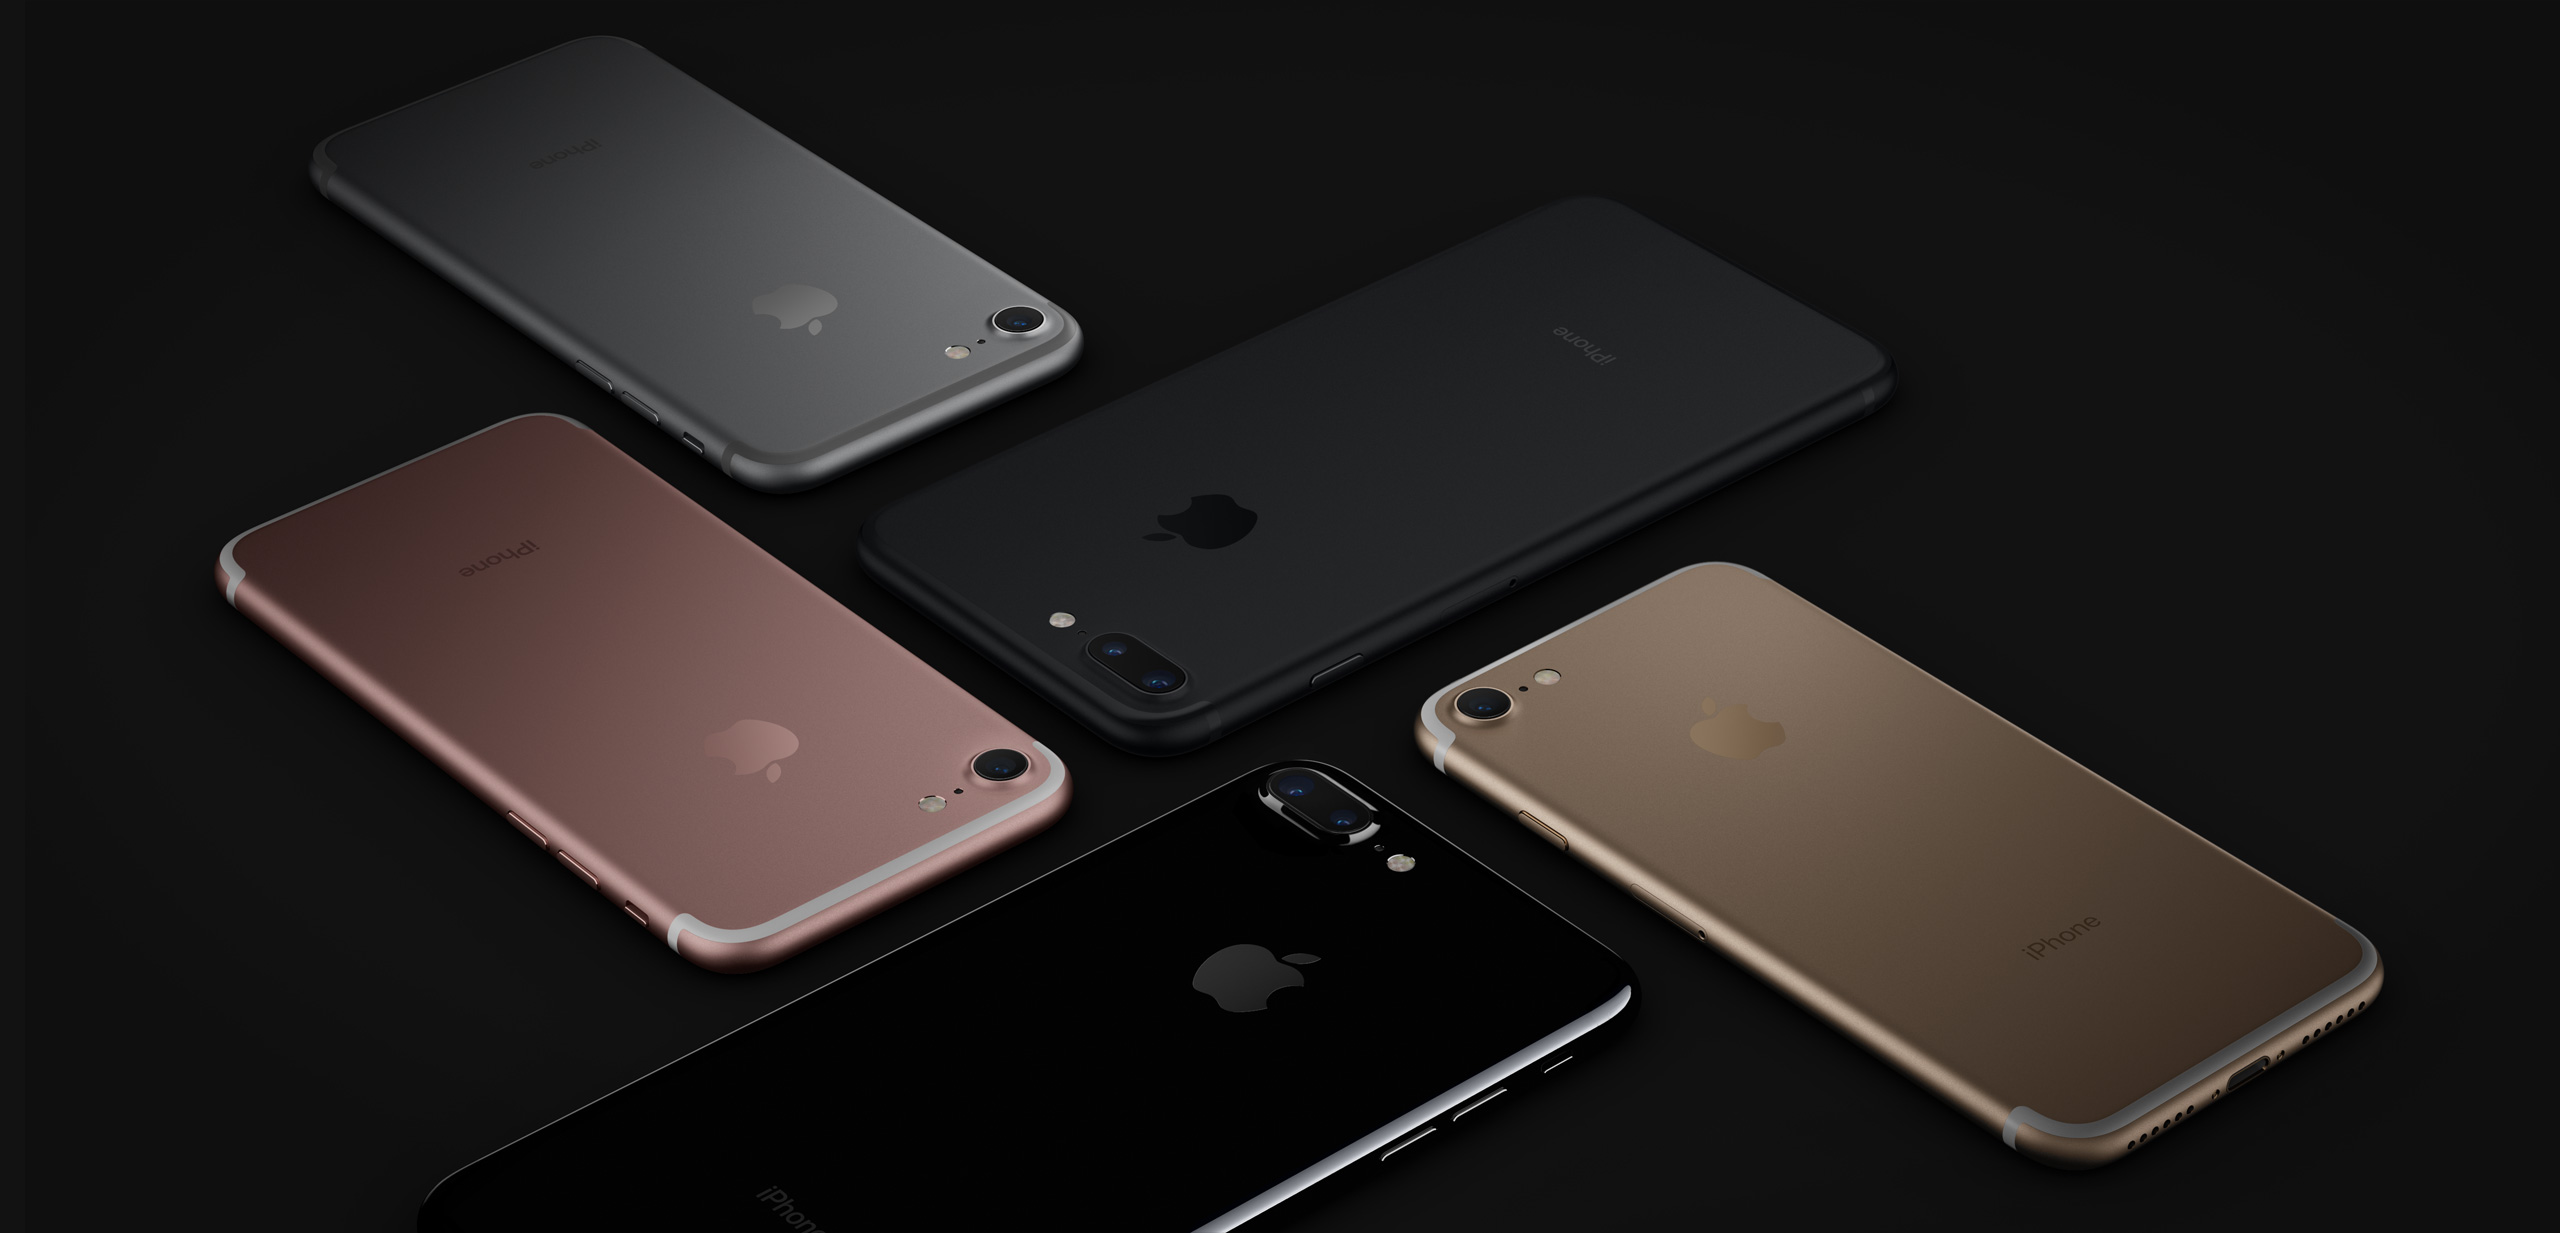 design hero large | Apple iPhone 7 Plus | เปิดตัวอย่างเป็นทางการ iPhone 7 และ iPhone 7 Plus สรุปข้อมูลโดยละเอียดพร้อมราคาและกำหนดการวางขาย